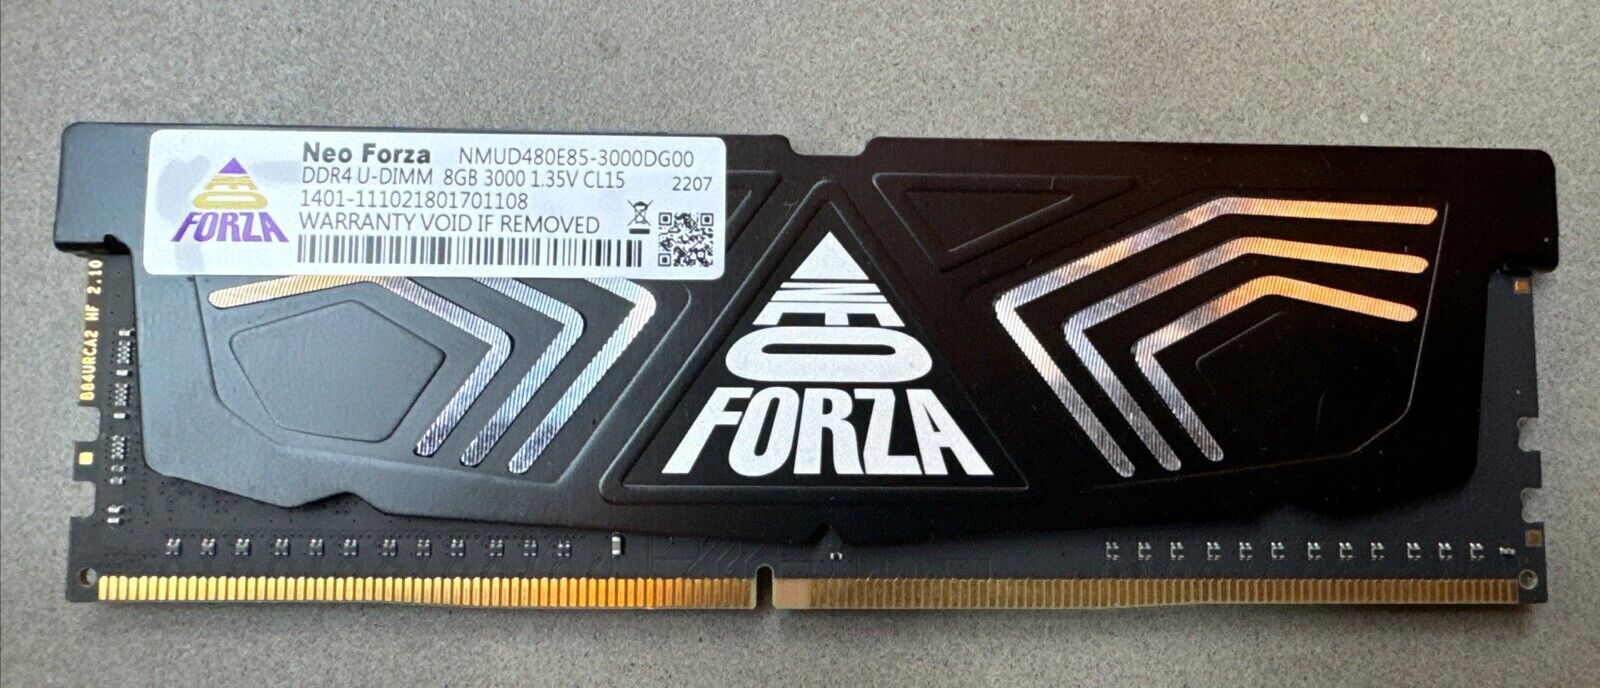 Neo Forza DDR4 8GB RAM | U-DIMM 3000 1.35V CL15 | NMUD480E85 - 3000DG00